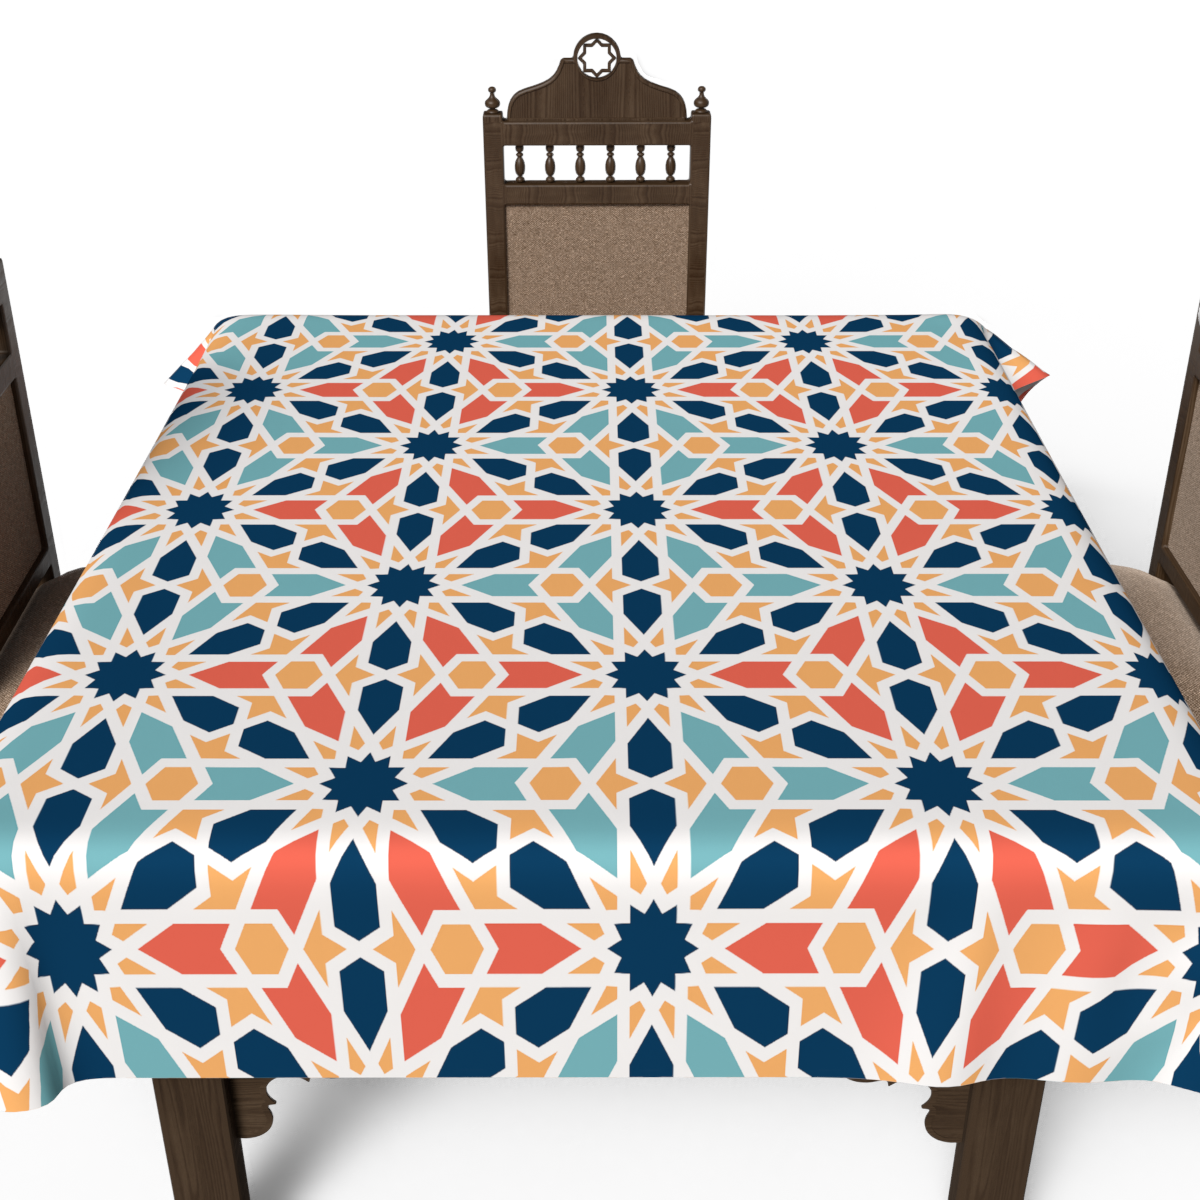 Arabesque Tablecloth